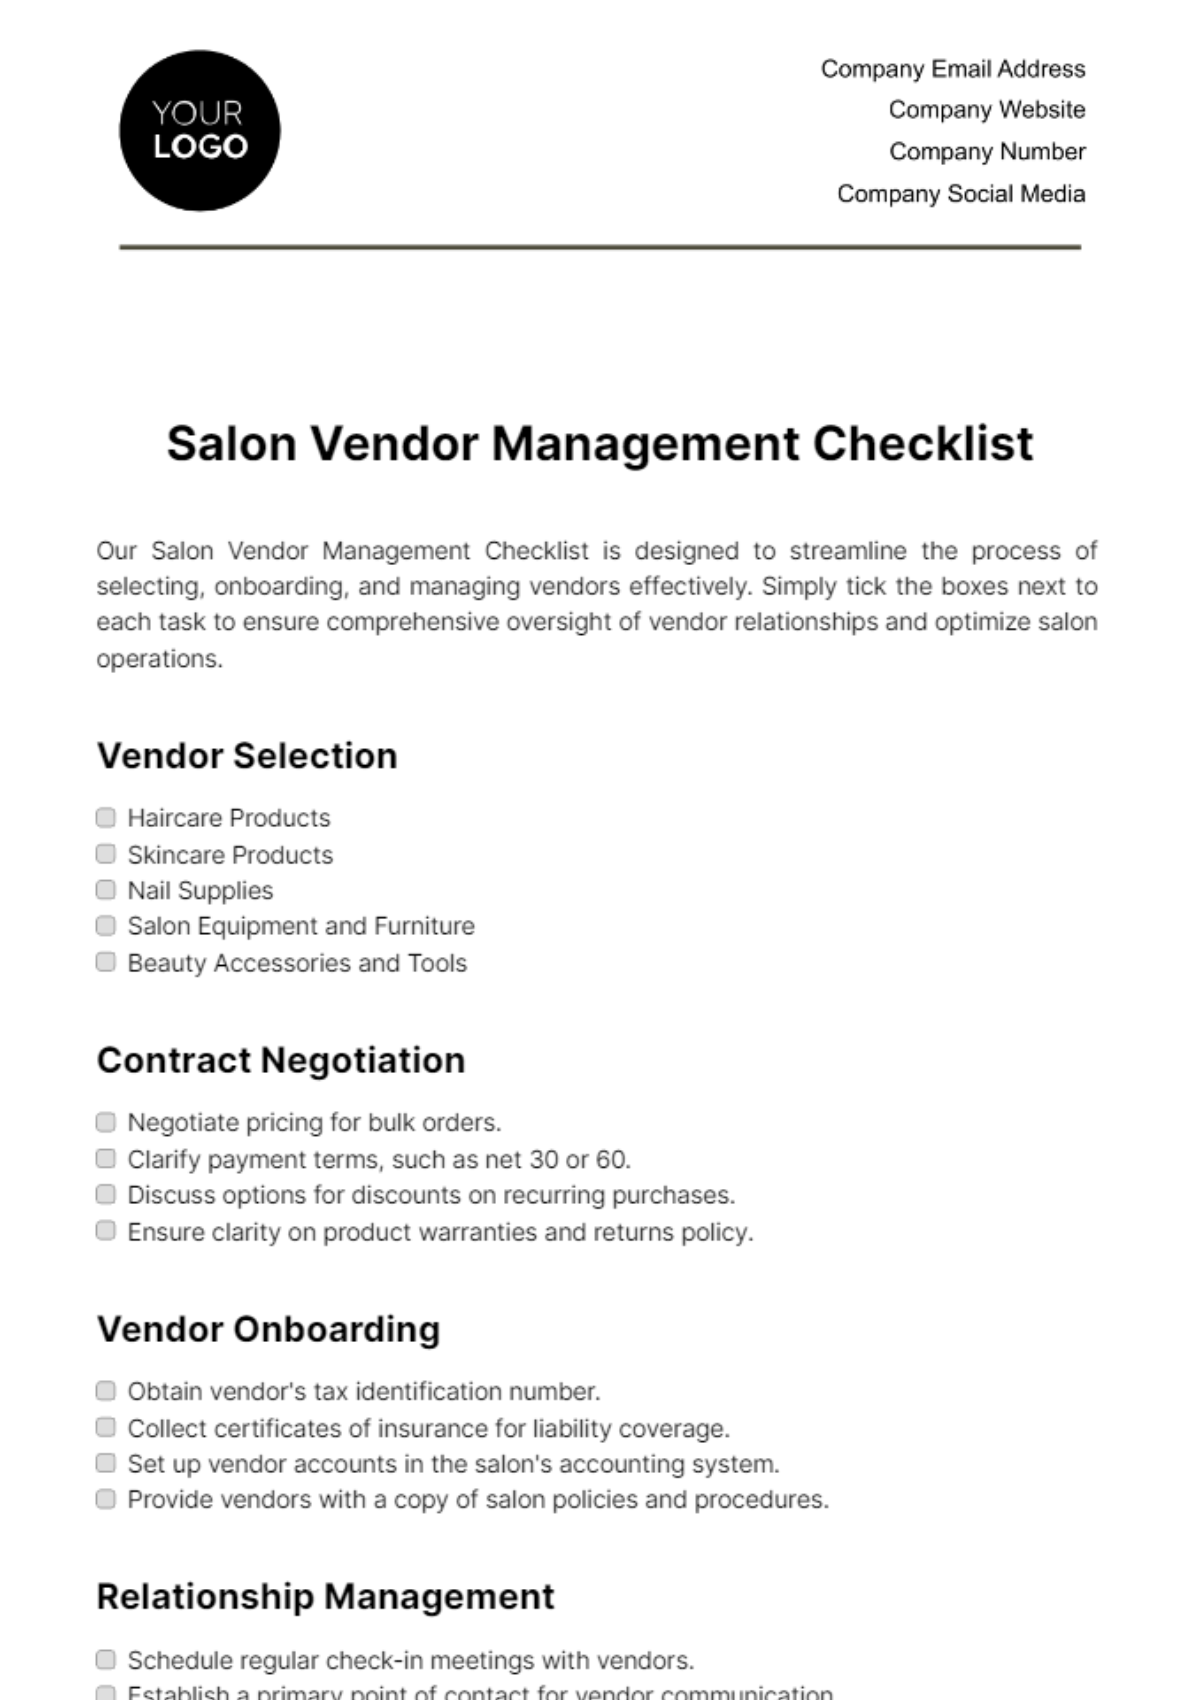 Salon Vendor Management Checklist Template